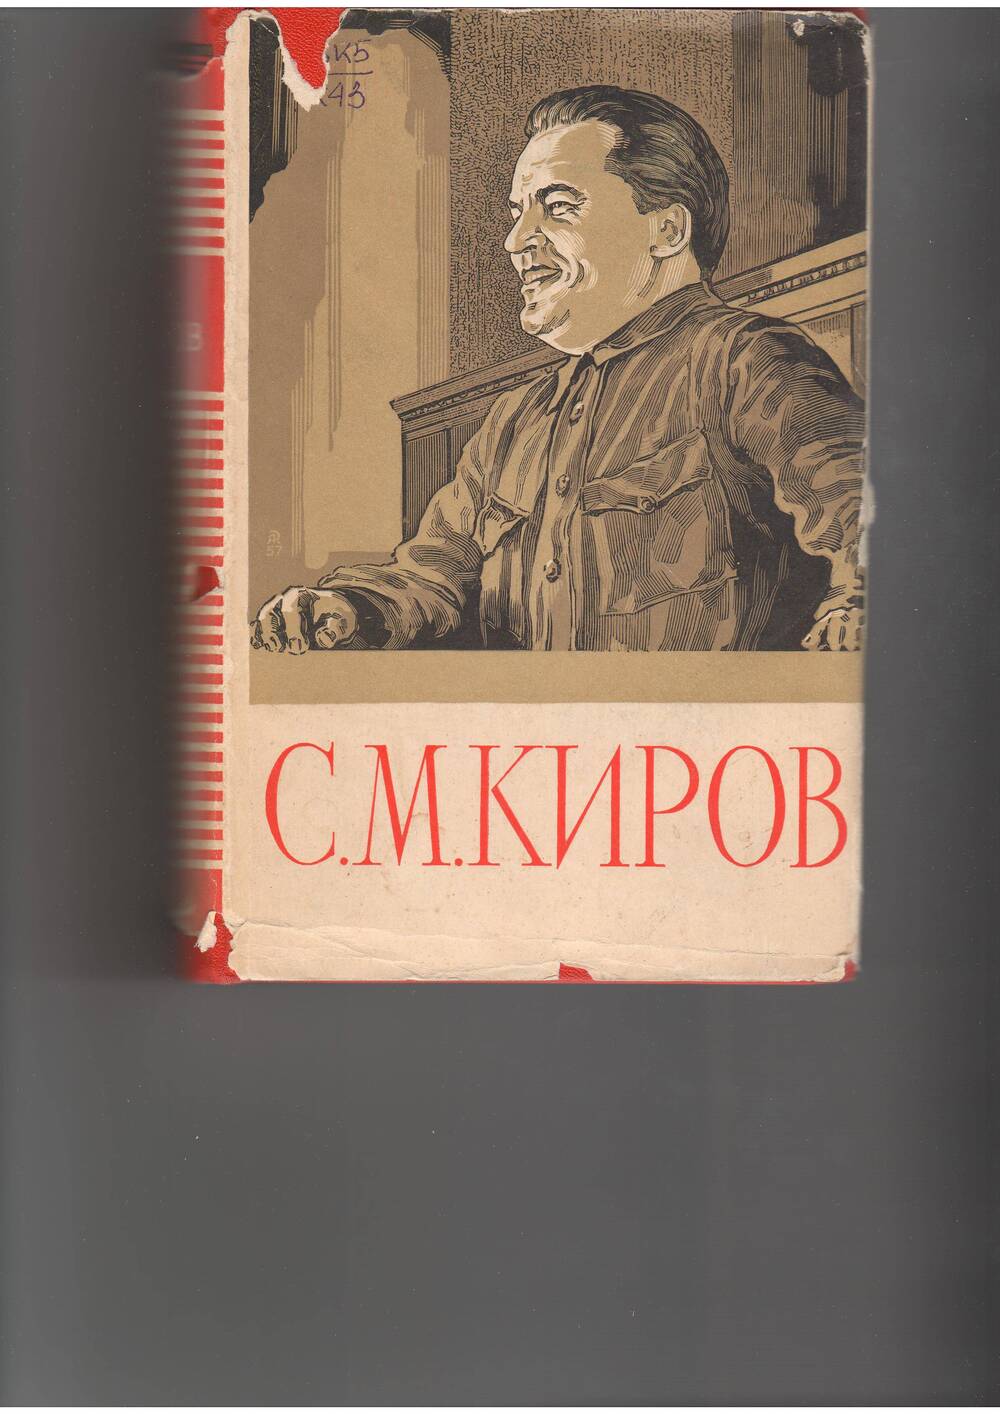 книга  Киров С.М. Избранные статьи и речи. - М: Политлит,1957.